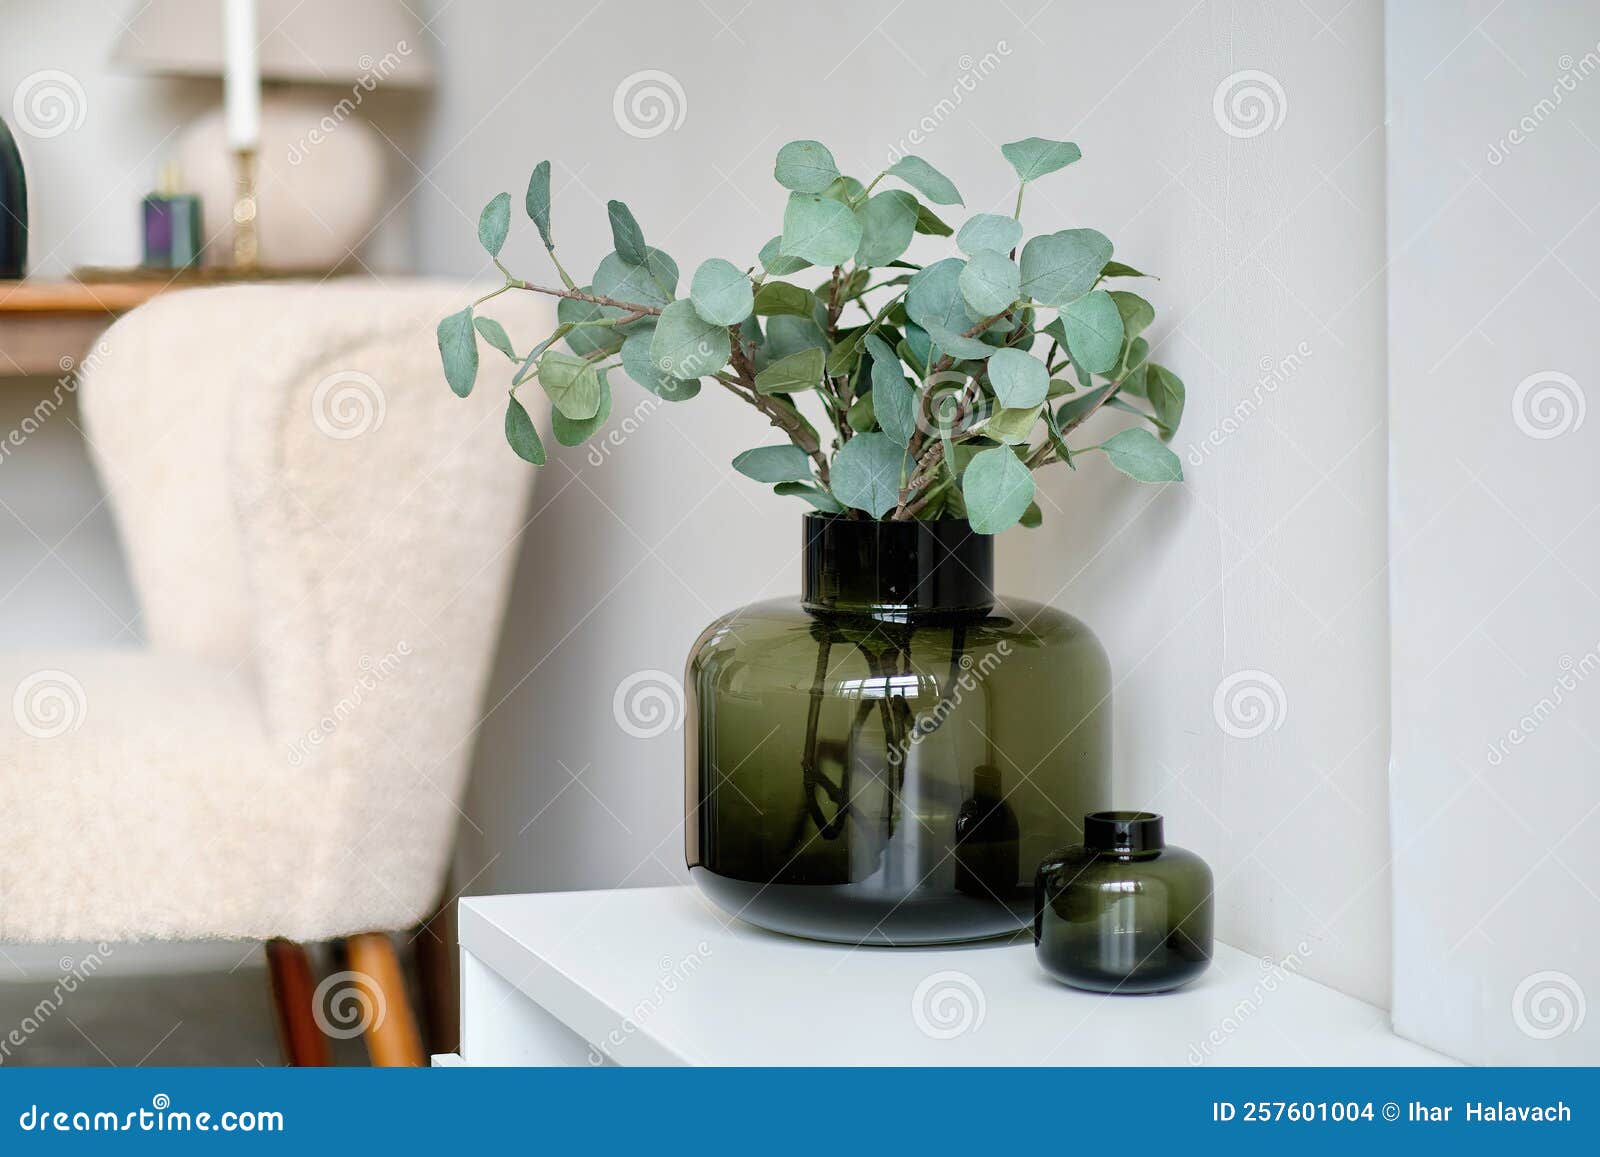 Vaso Decorativo Con Piante Artificiali All'interno Fotografia Stock -  Immagine di viola, tabella: 257601004